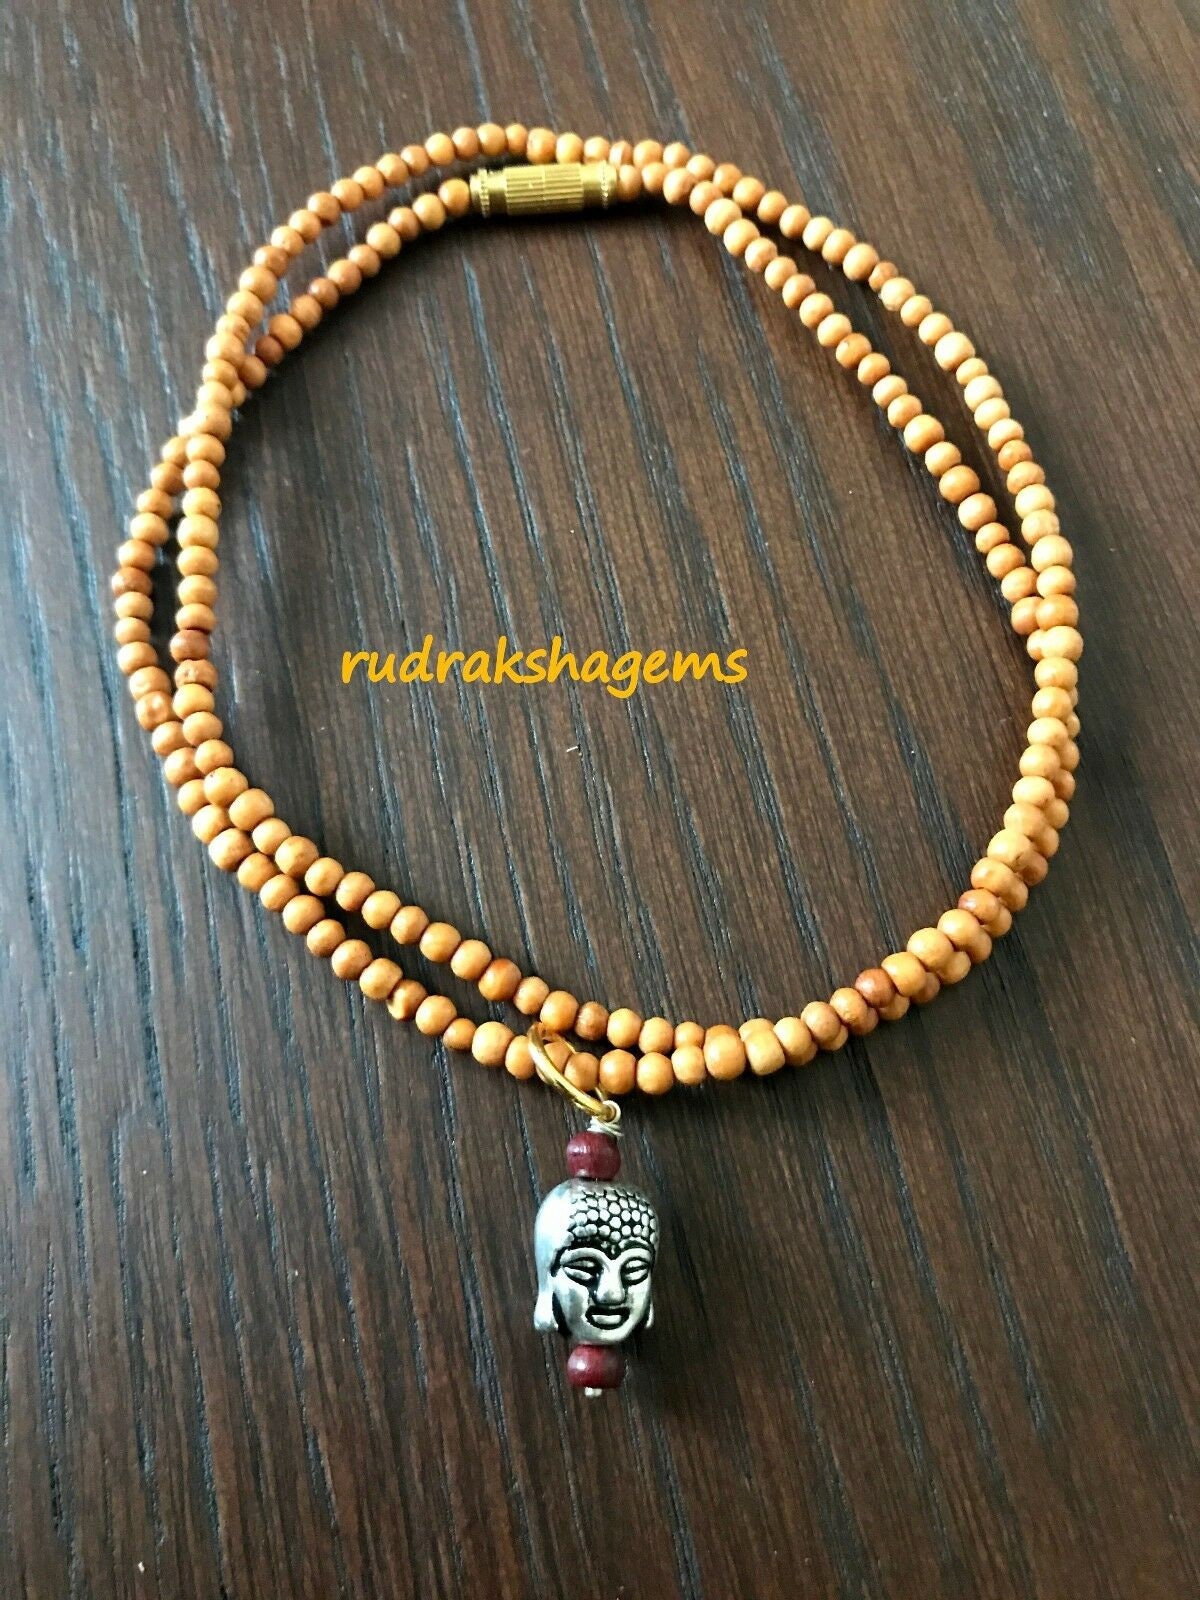 Wooden Buddha necklace - Buddha necklace - Tibetan Choker - Yoga jewellery - Rose wood choker - Buddha pendant necklace, Zen Gift Choker